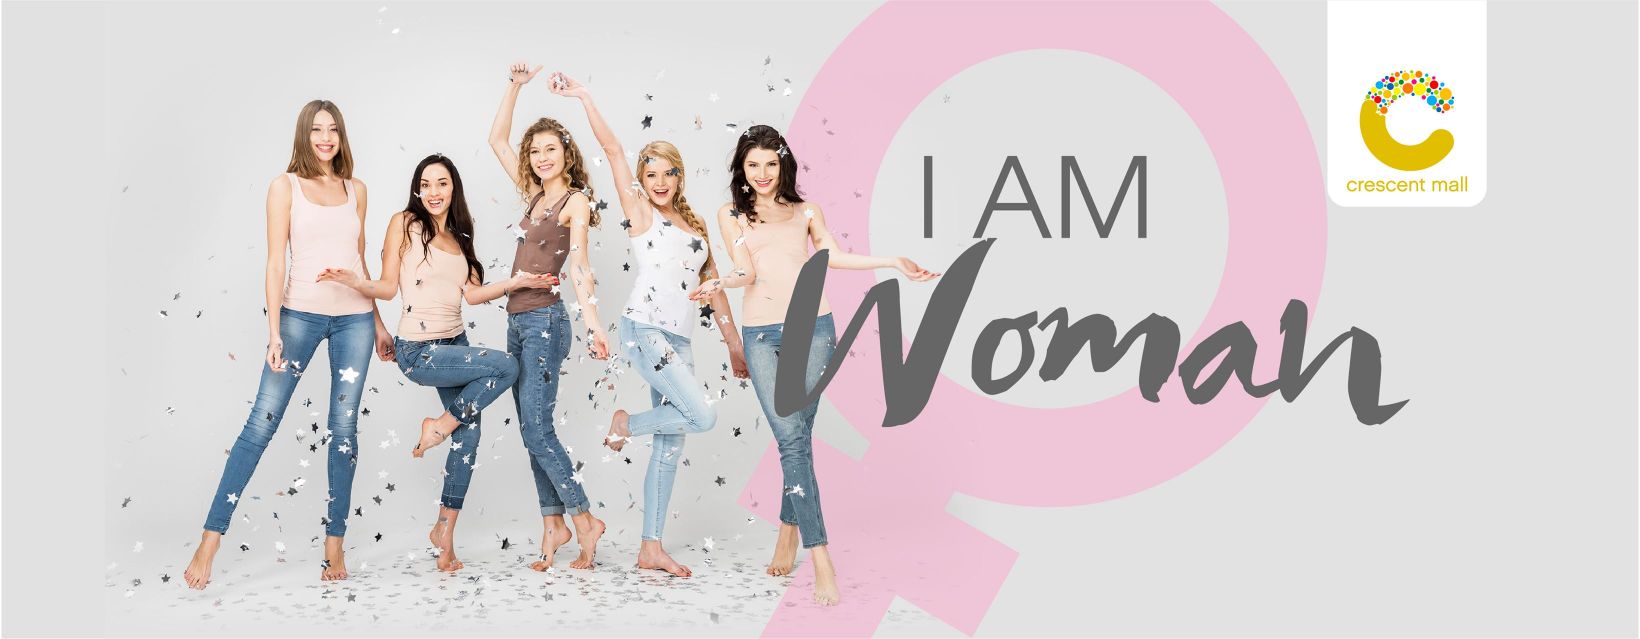 I AM WOMAN – Chúc mừng Ngày Quốc Tế Phụ Nữ tại Crescent Mall 3 I AM WOMAN – Chúc mừng Ngày Quốc tế Phụ nữ tại Crescent Mall 